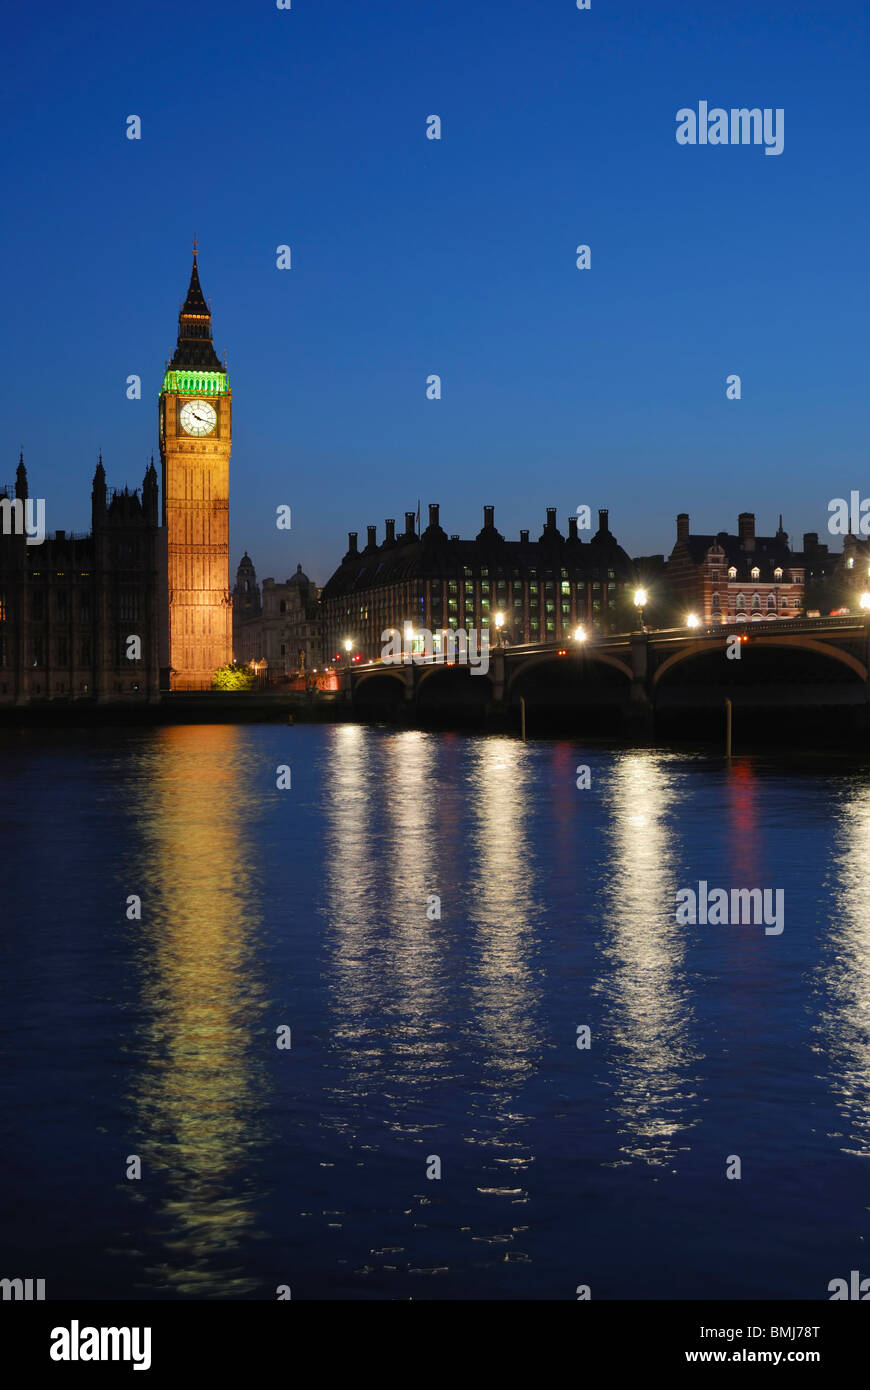 Big Ben, Westminster, Londres, Royaume-Uni, illuminé au crépuscule, avec le pont de Westminster, Vue depuis la South Bank Banque D'Images